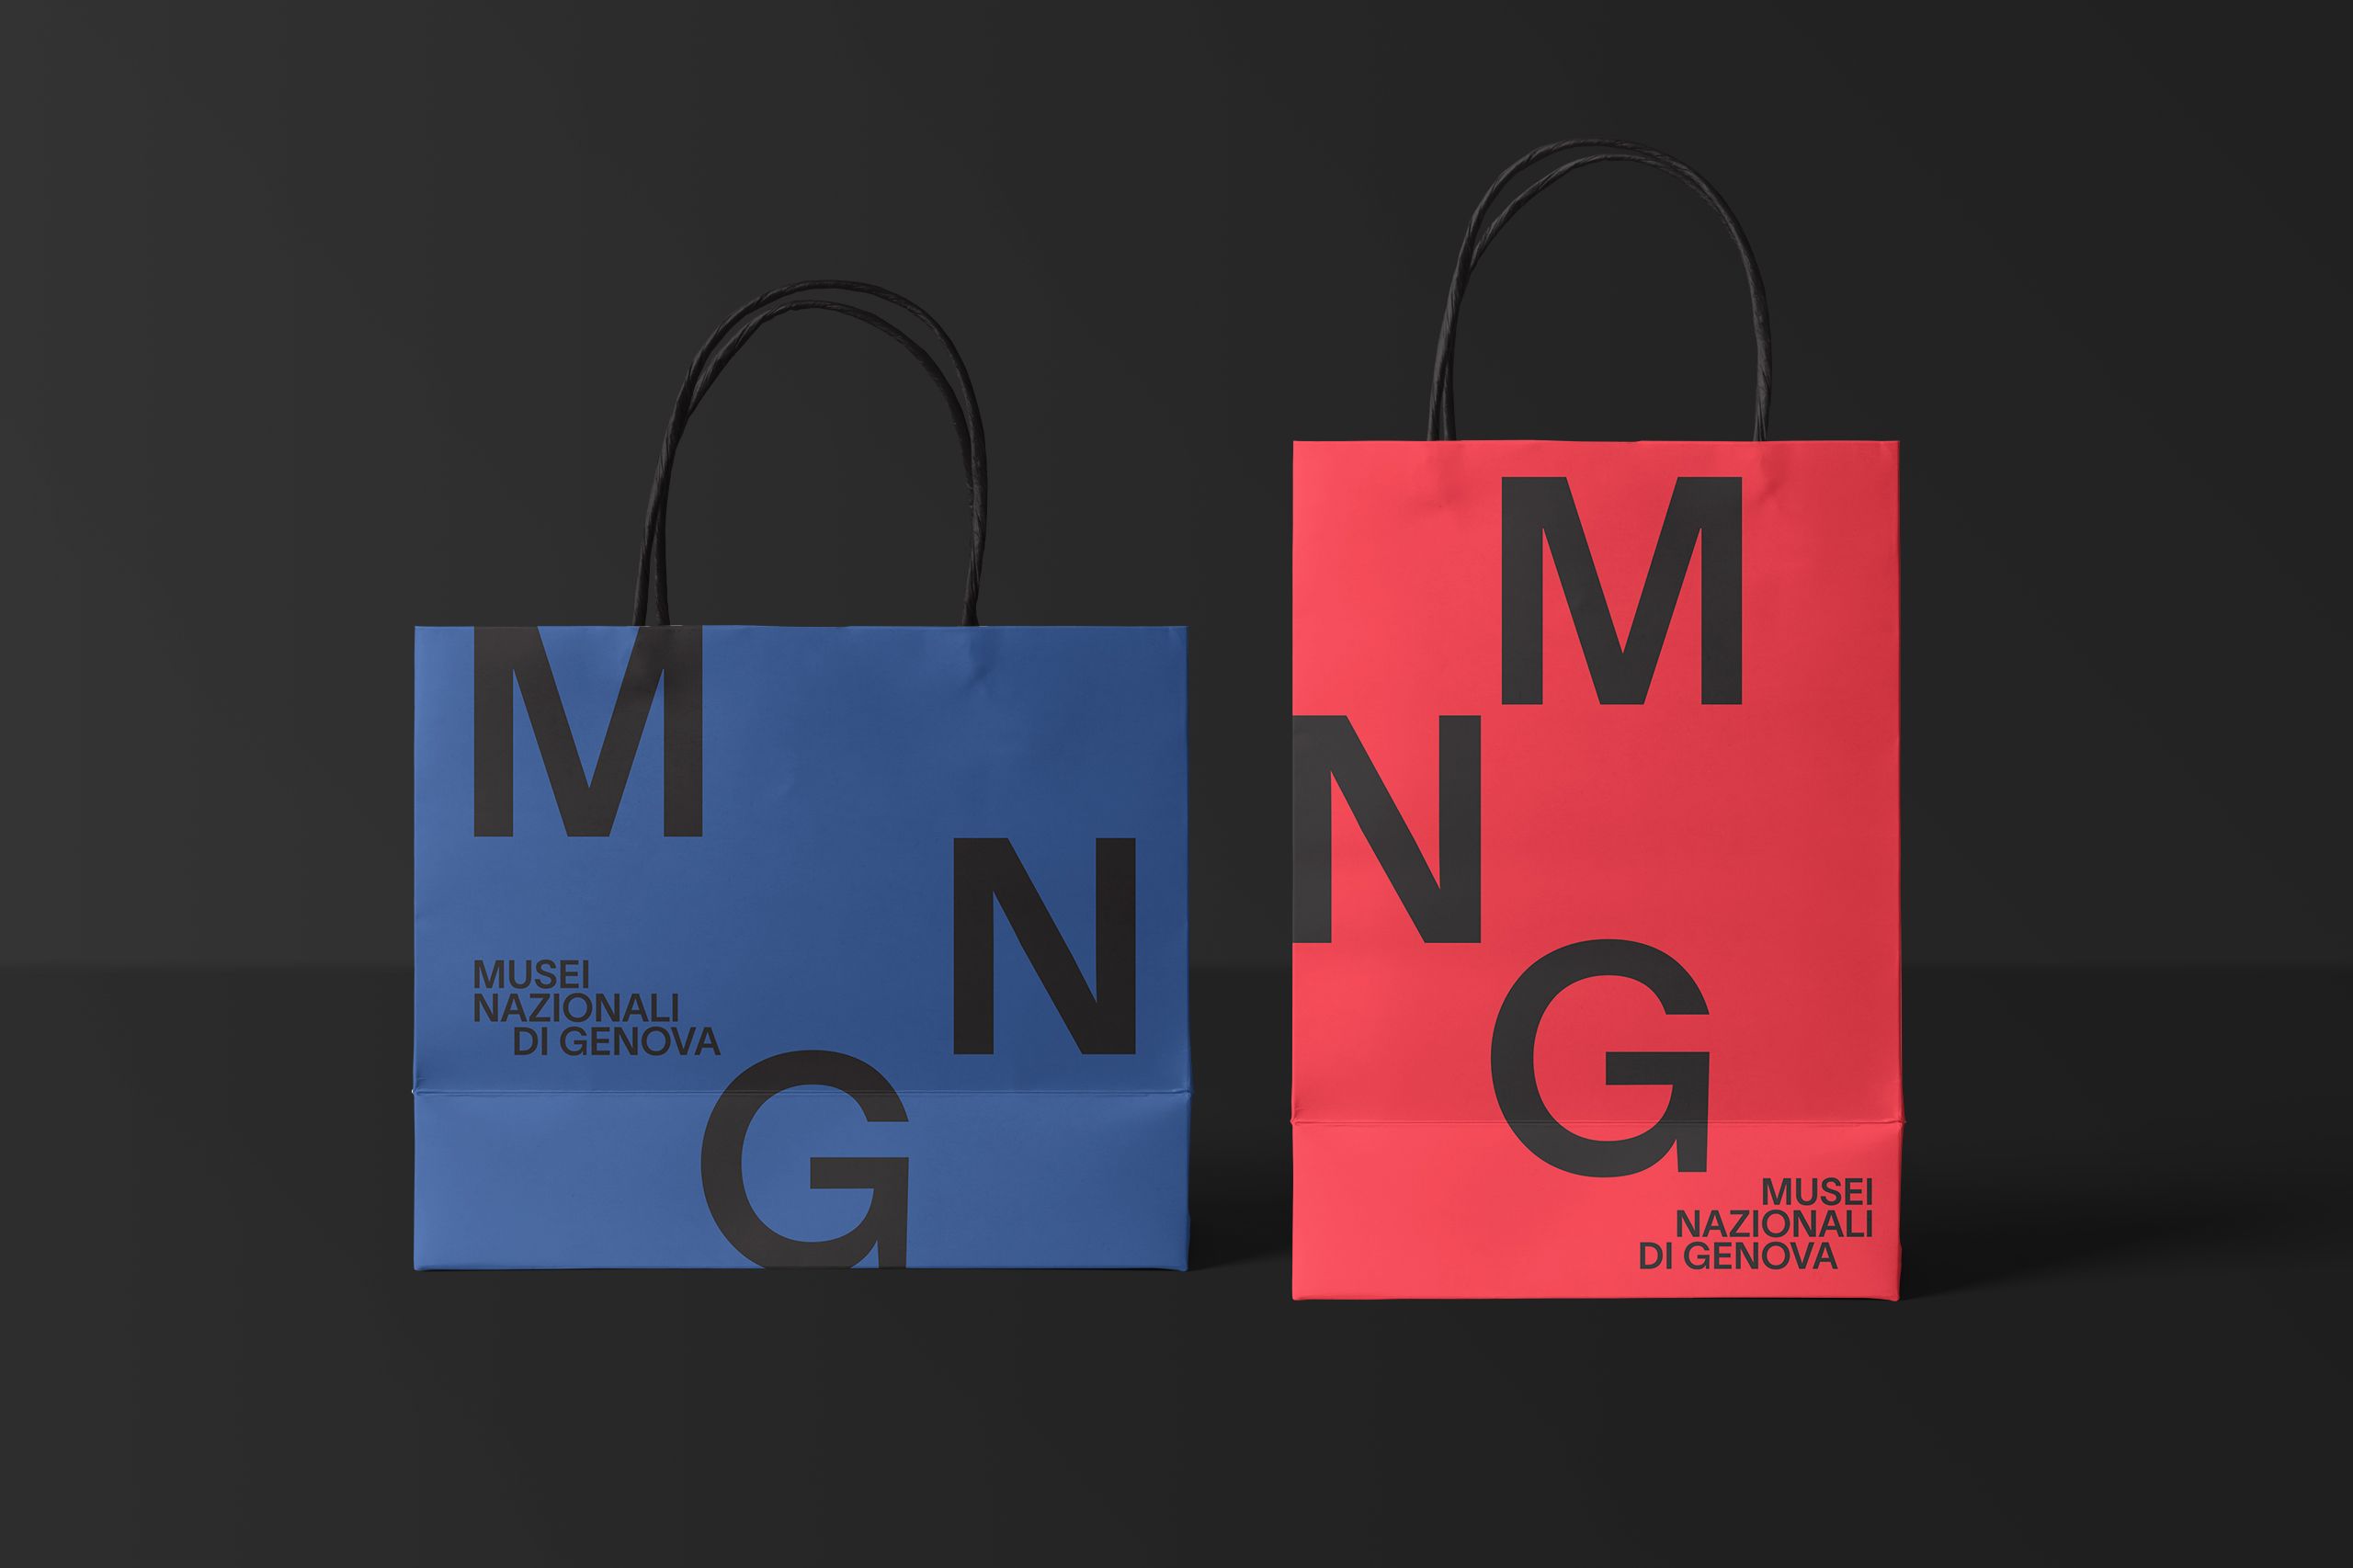 MNG Musei Nazionali di Genova United by Design